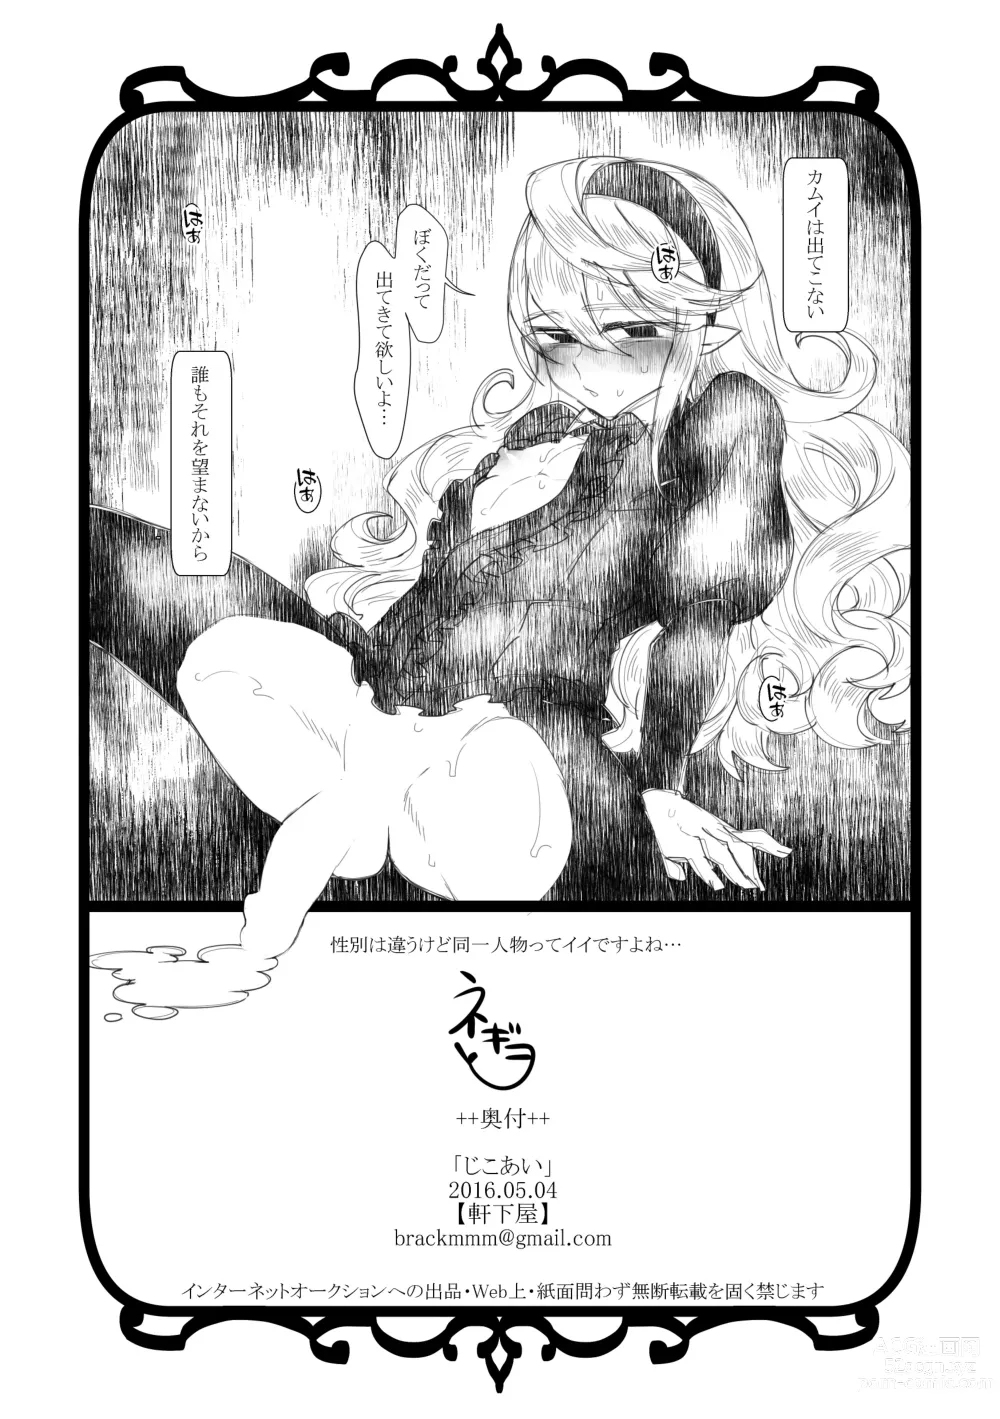 Page 9 of doujinshi Jikoai